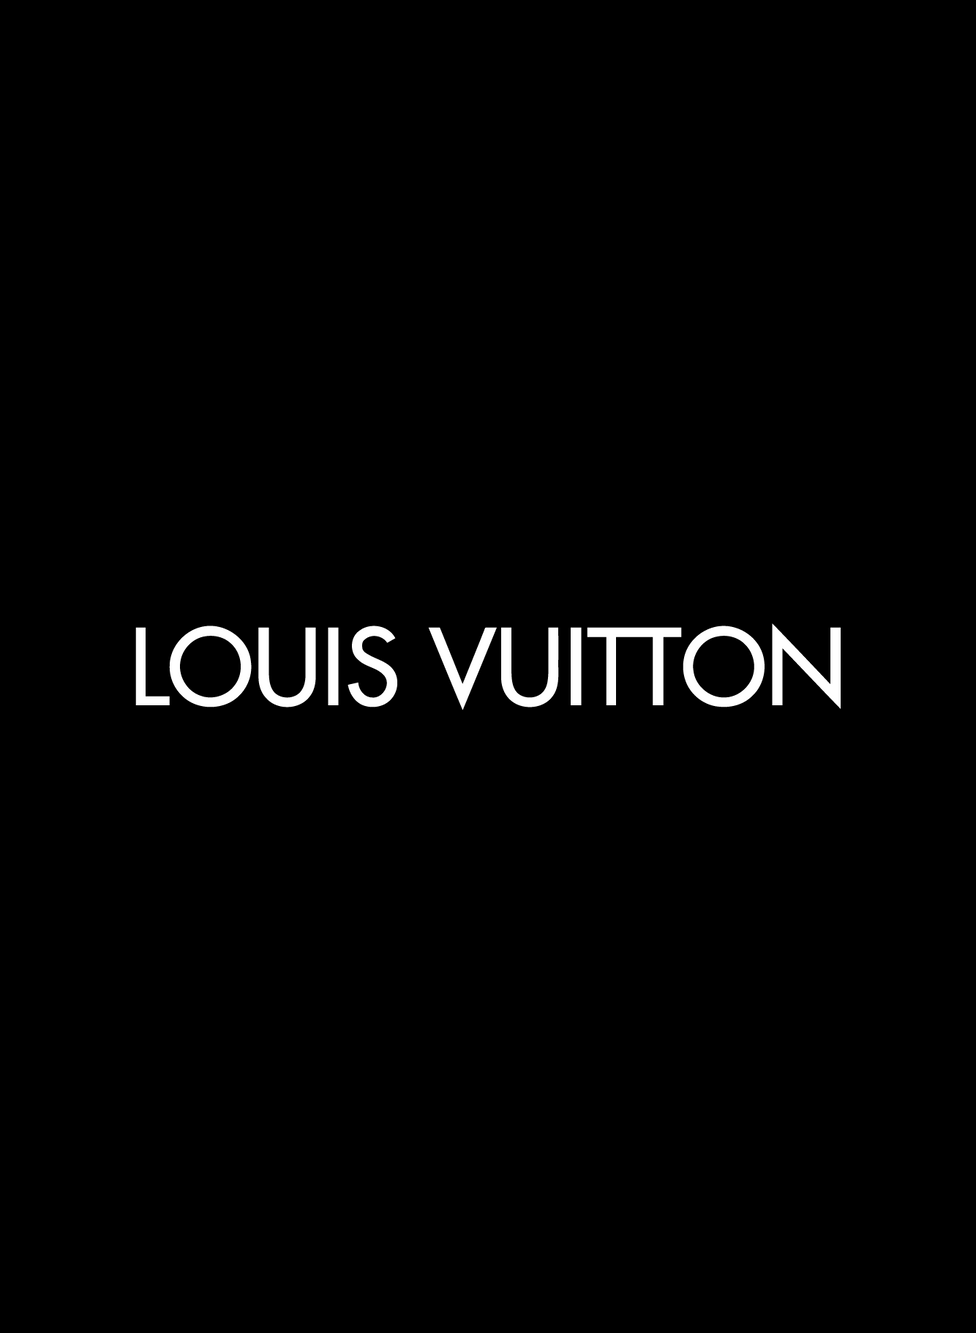 Louis Vuitton met en scène sa première collection de joaillerie unisexe.